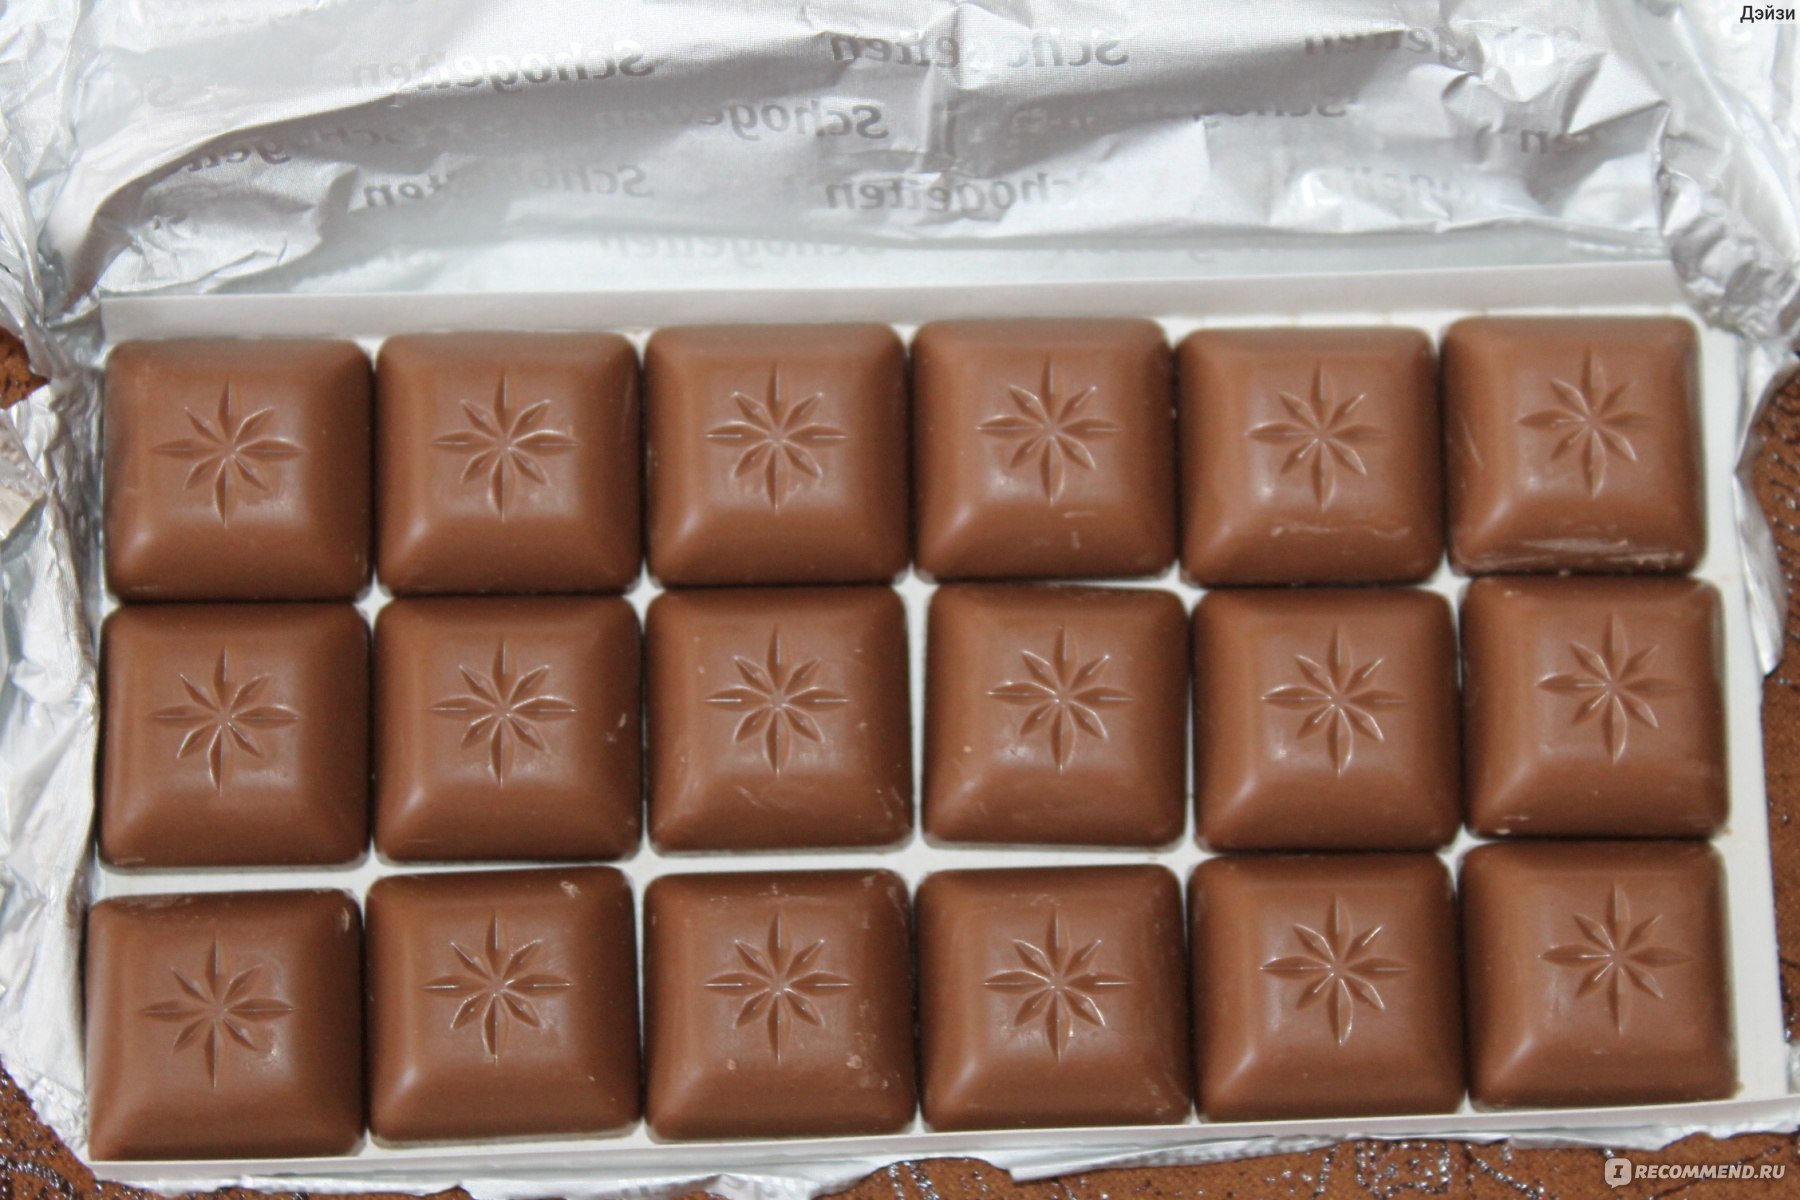 Шоколад квадрат. Шоколад квадратиками. Молочный шоколад квадратиками. Новый шоколад. Шоколад с квадратиками карамели.